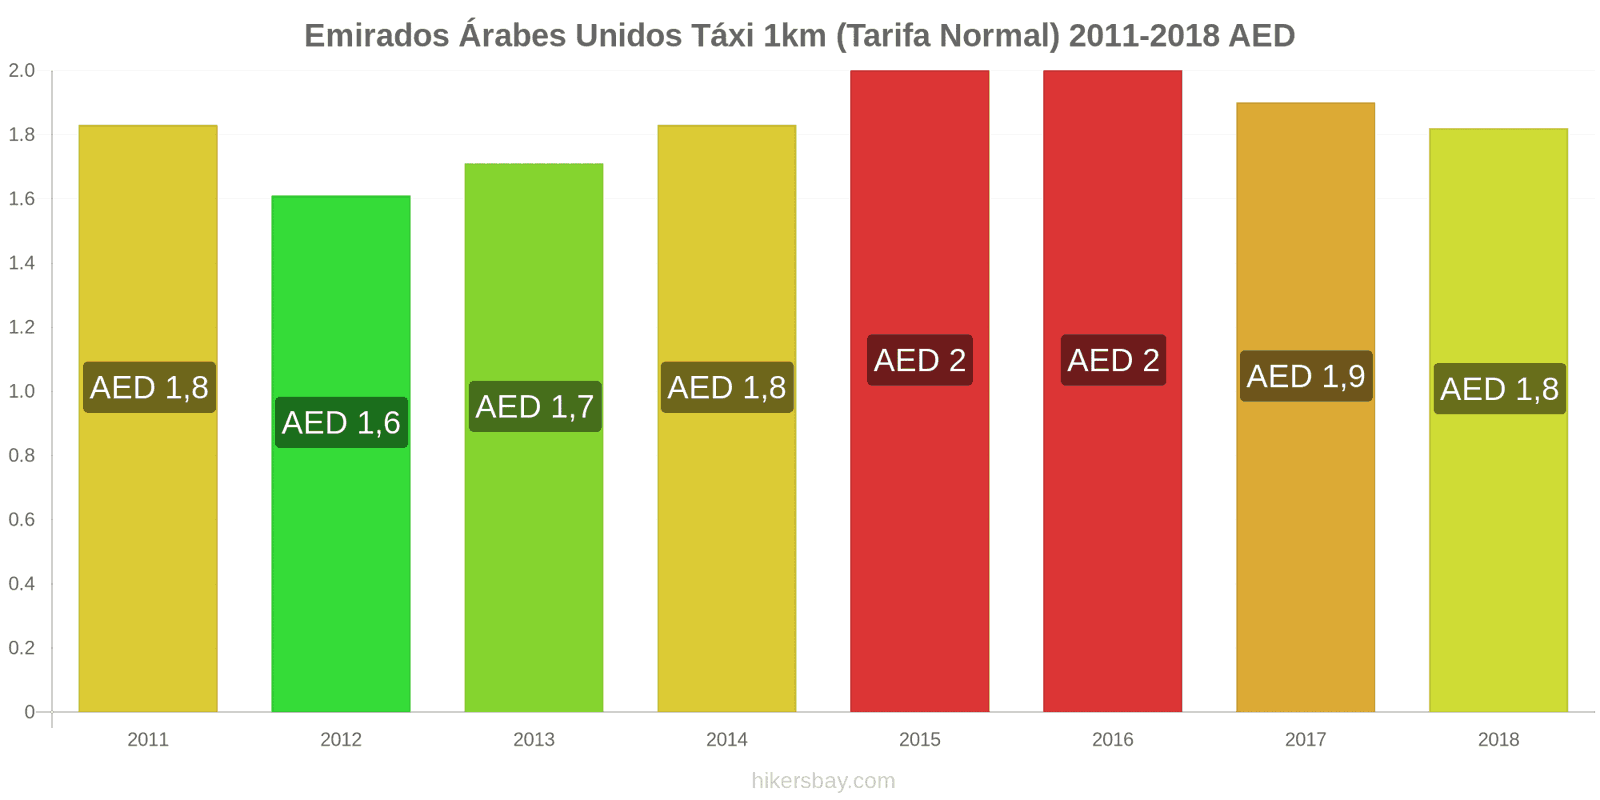 Emirados Árabes Unidos mudanças de preços Táxi 1km (Tarifa Normal) hikersbay.com